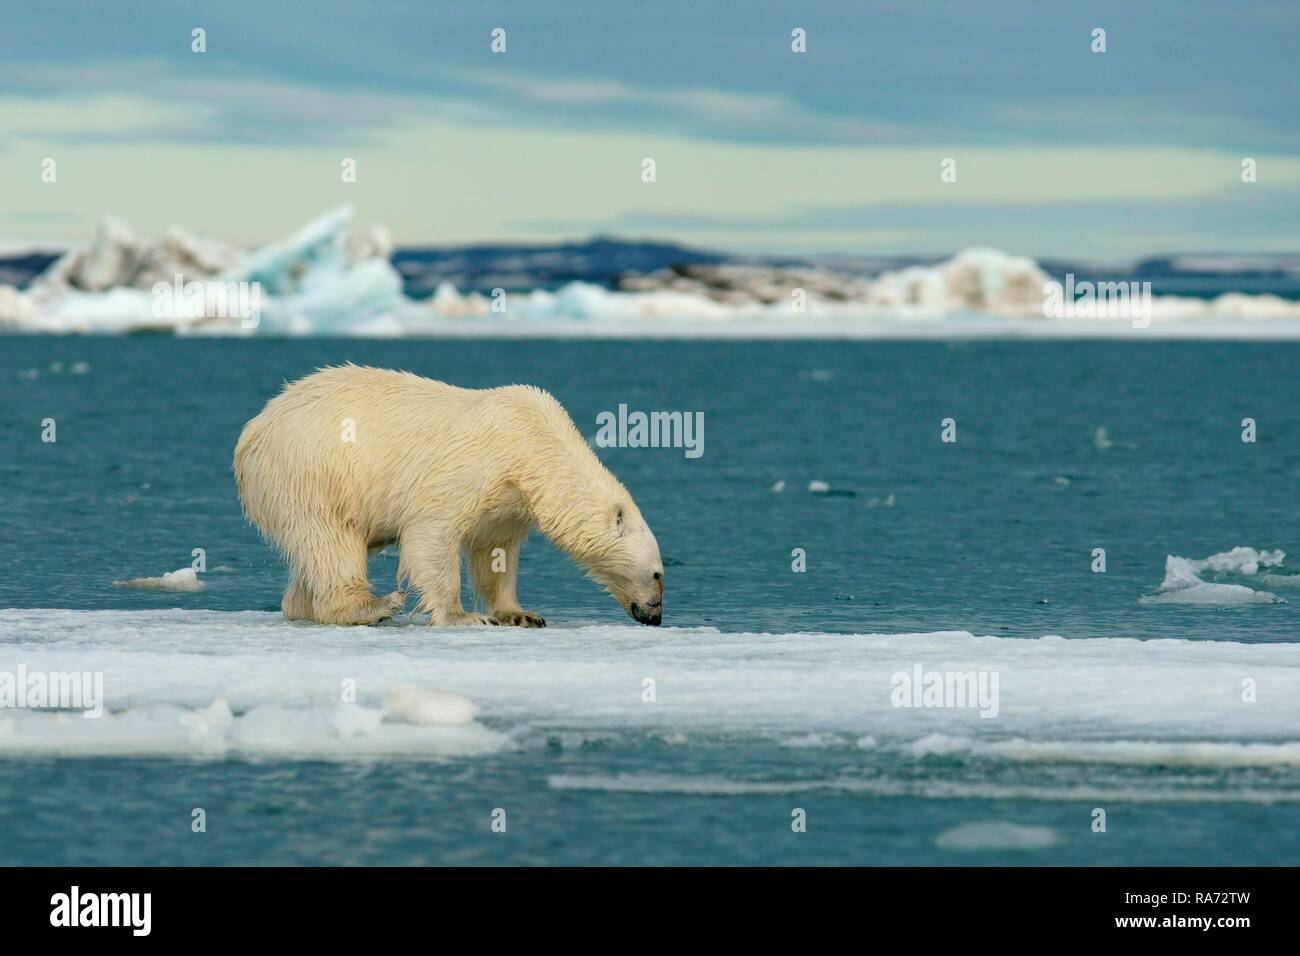 Eisbär (Ursus maritimus) stehend auf Eisscholle, in der norwegischen Arktis Svalbard, Norwegen Stockfoto